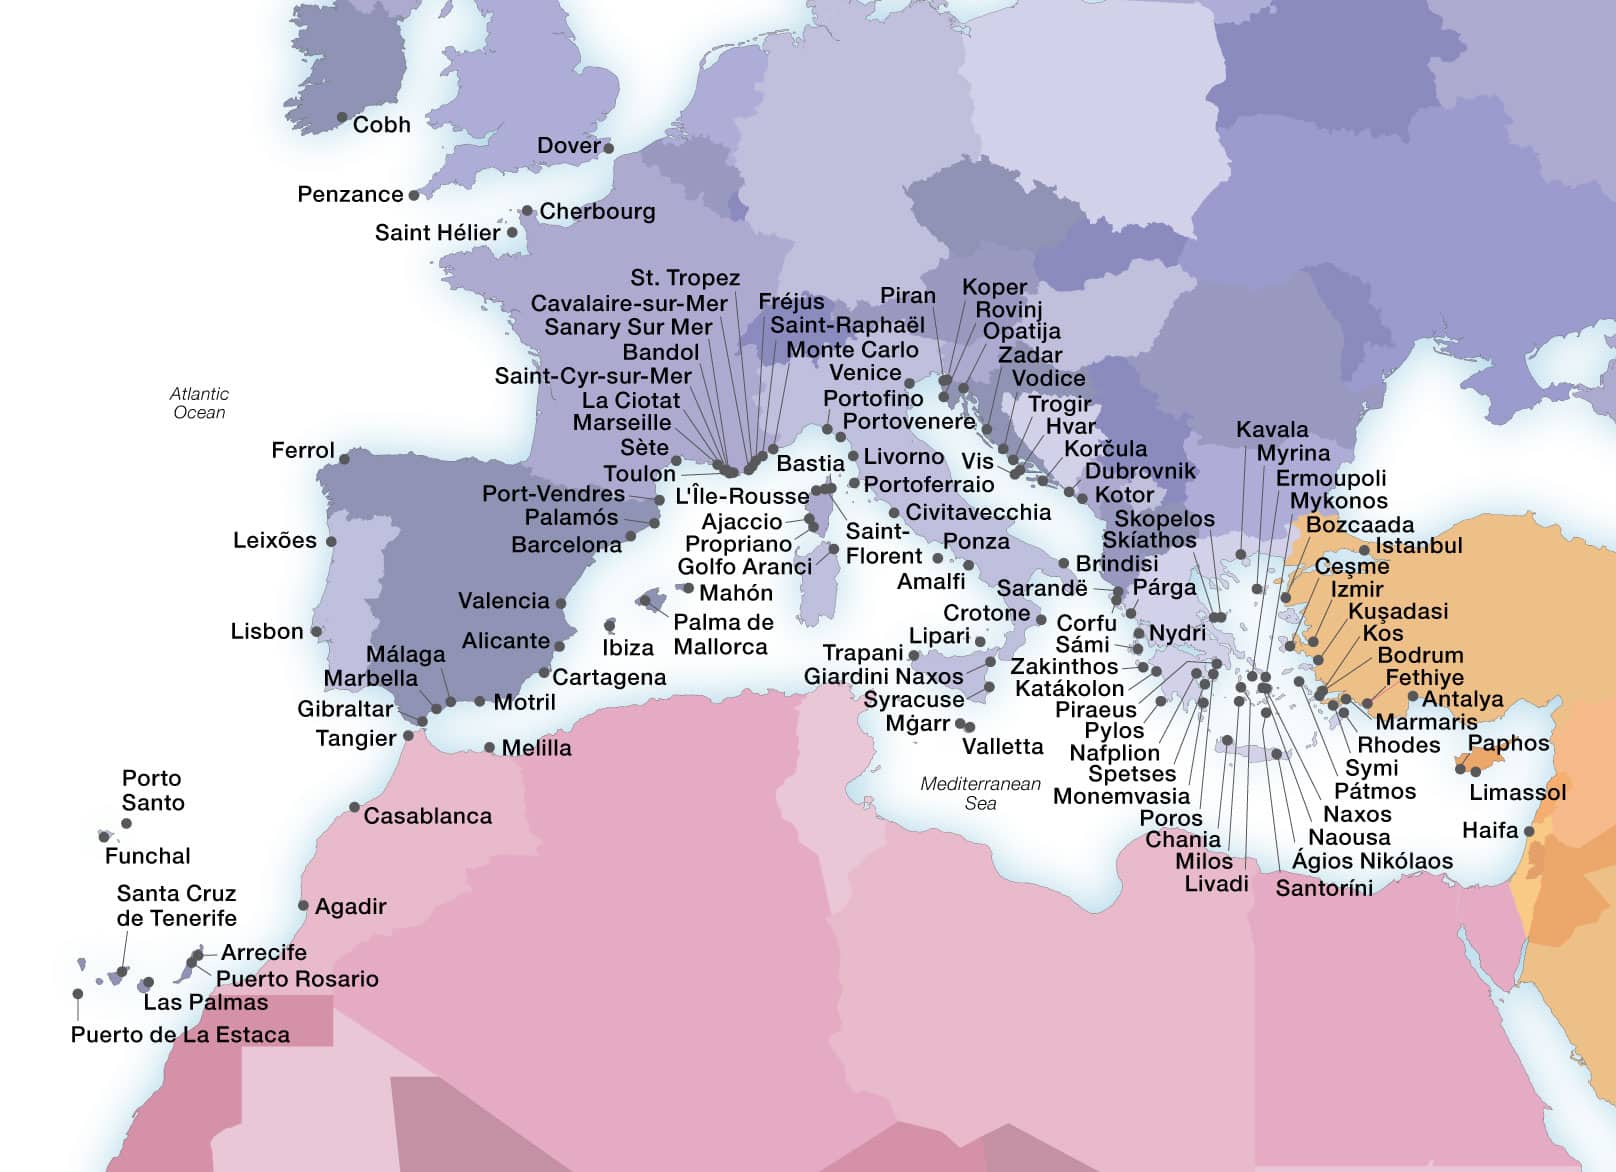 Seabourn's Mediterranean ports map